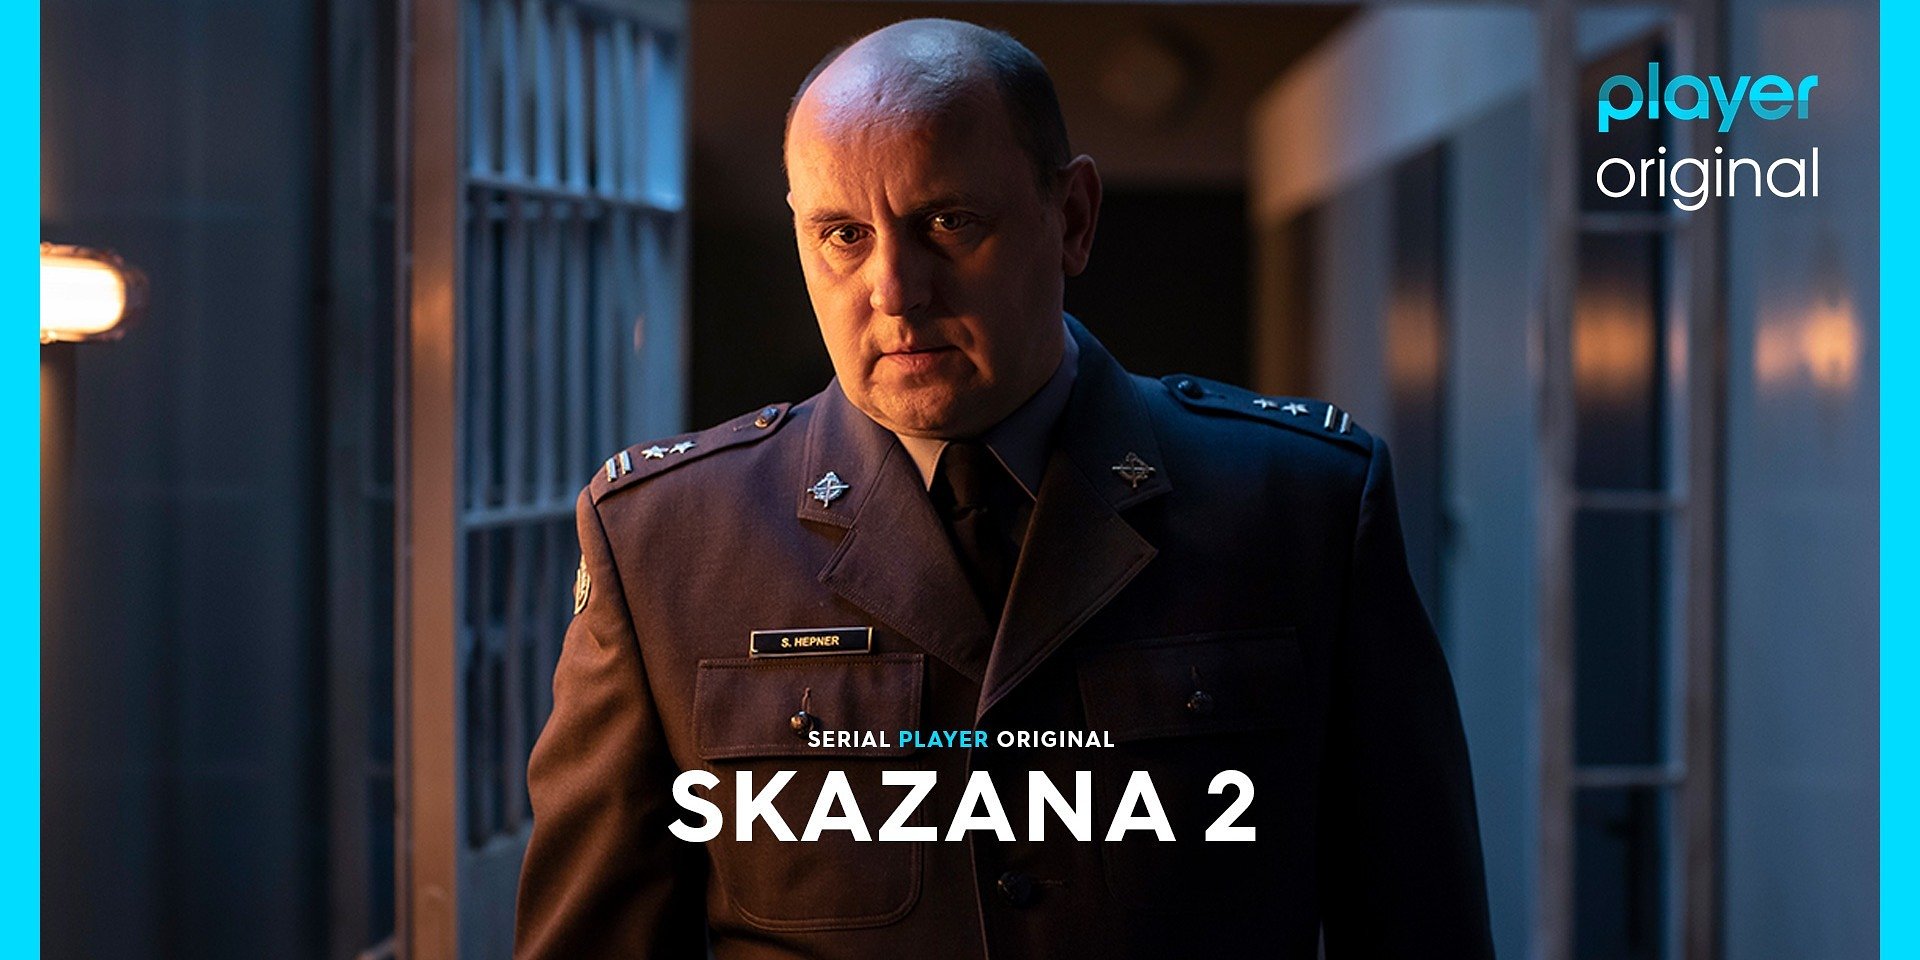 Gdzie i kiedy oglądać serial “Skazana 2”? Znamy datę premiery!